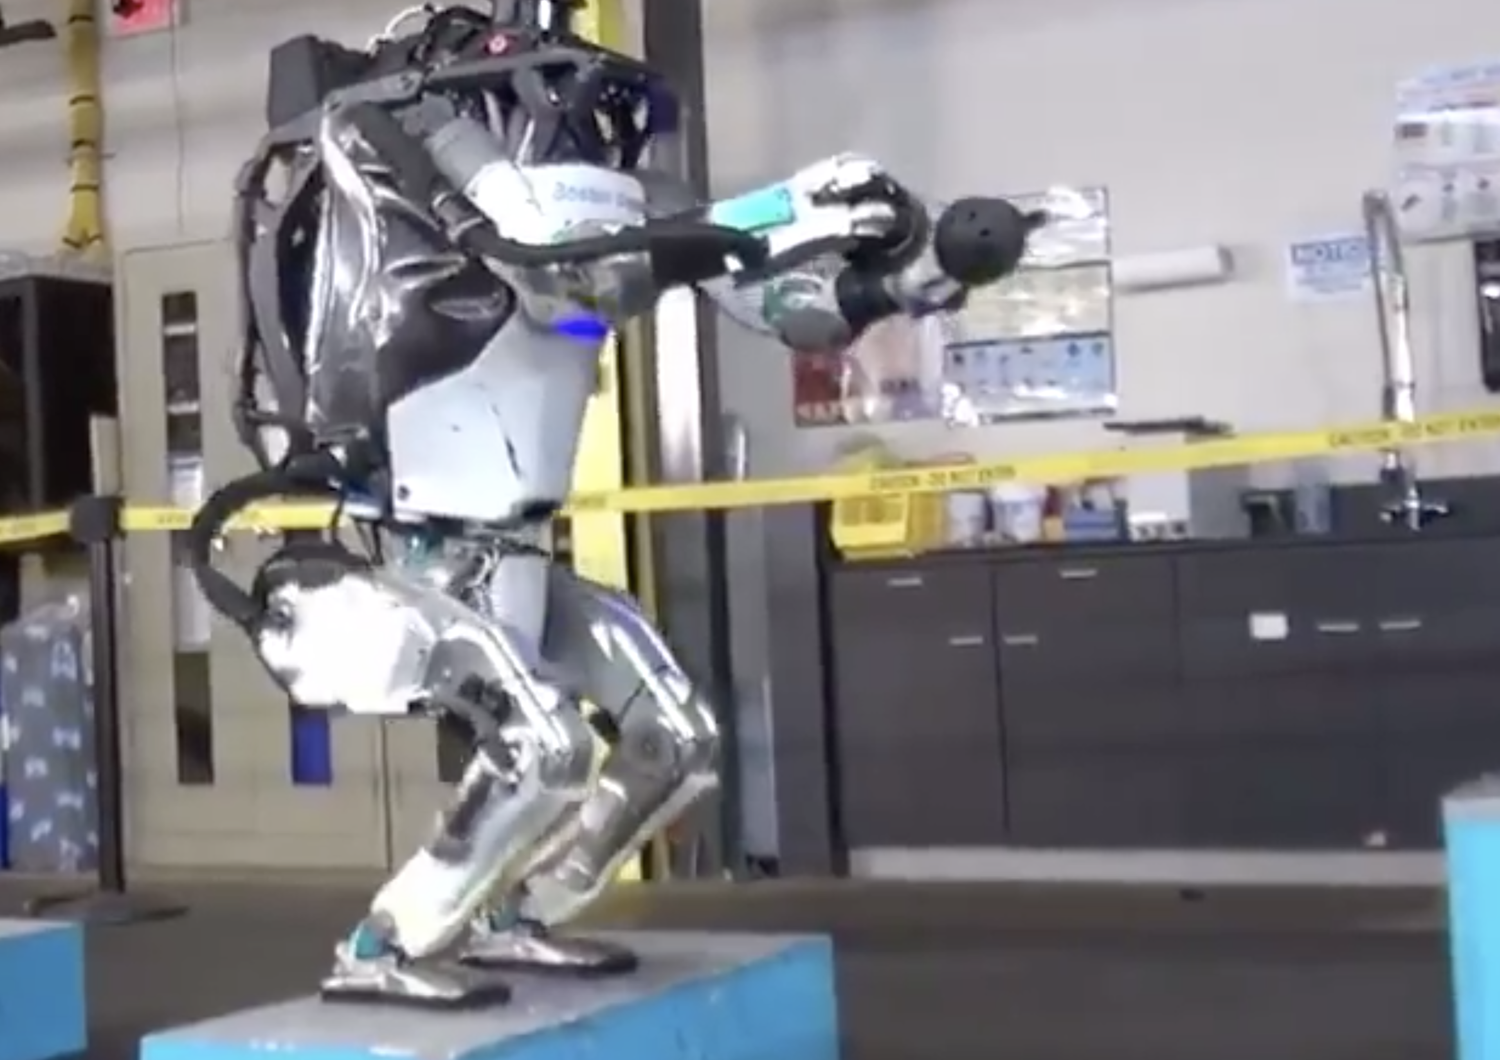 Tra poco questo robot sar&agrave; cos&igrave; veloce che non riuscirete pi&ugrave; a vederlo.&nbsp;Musk&nbsp;inquieta su Twitter